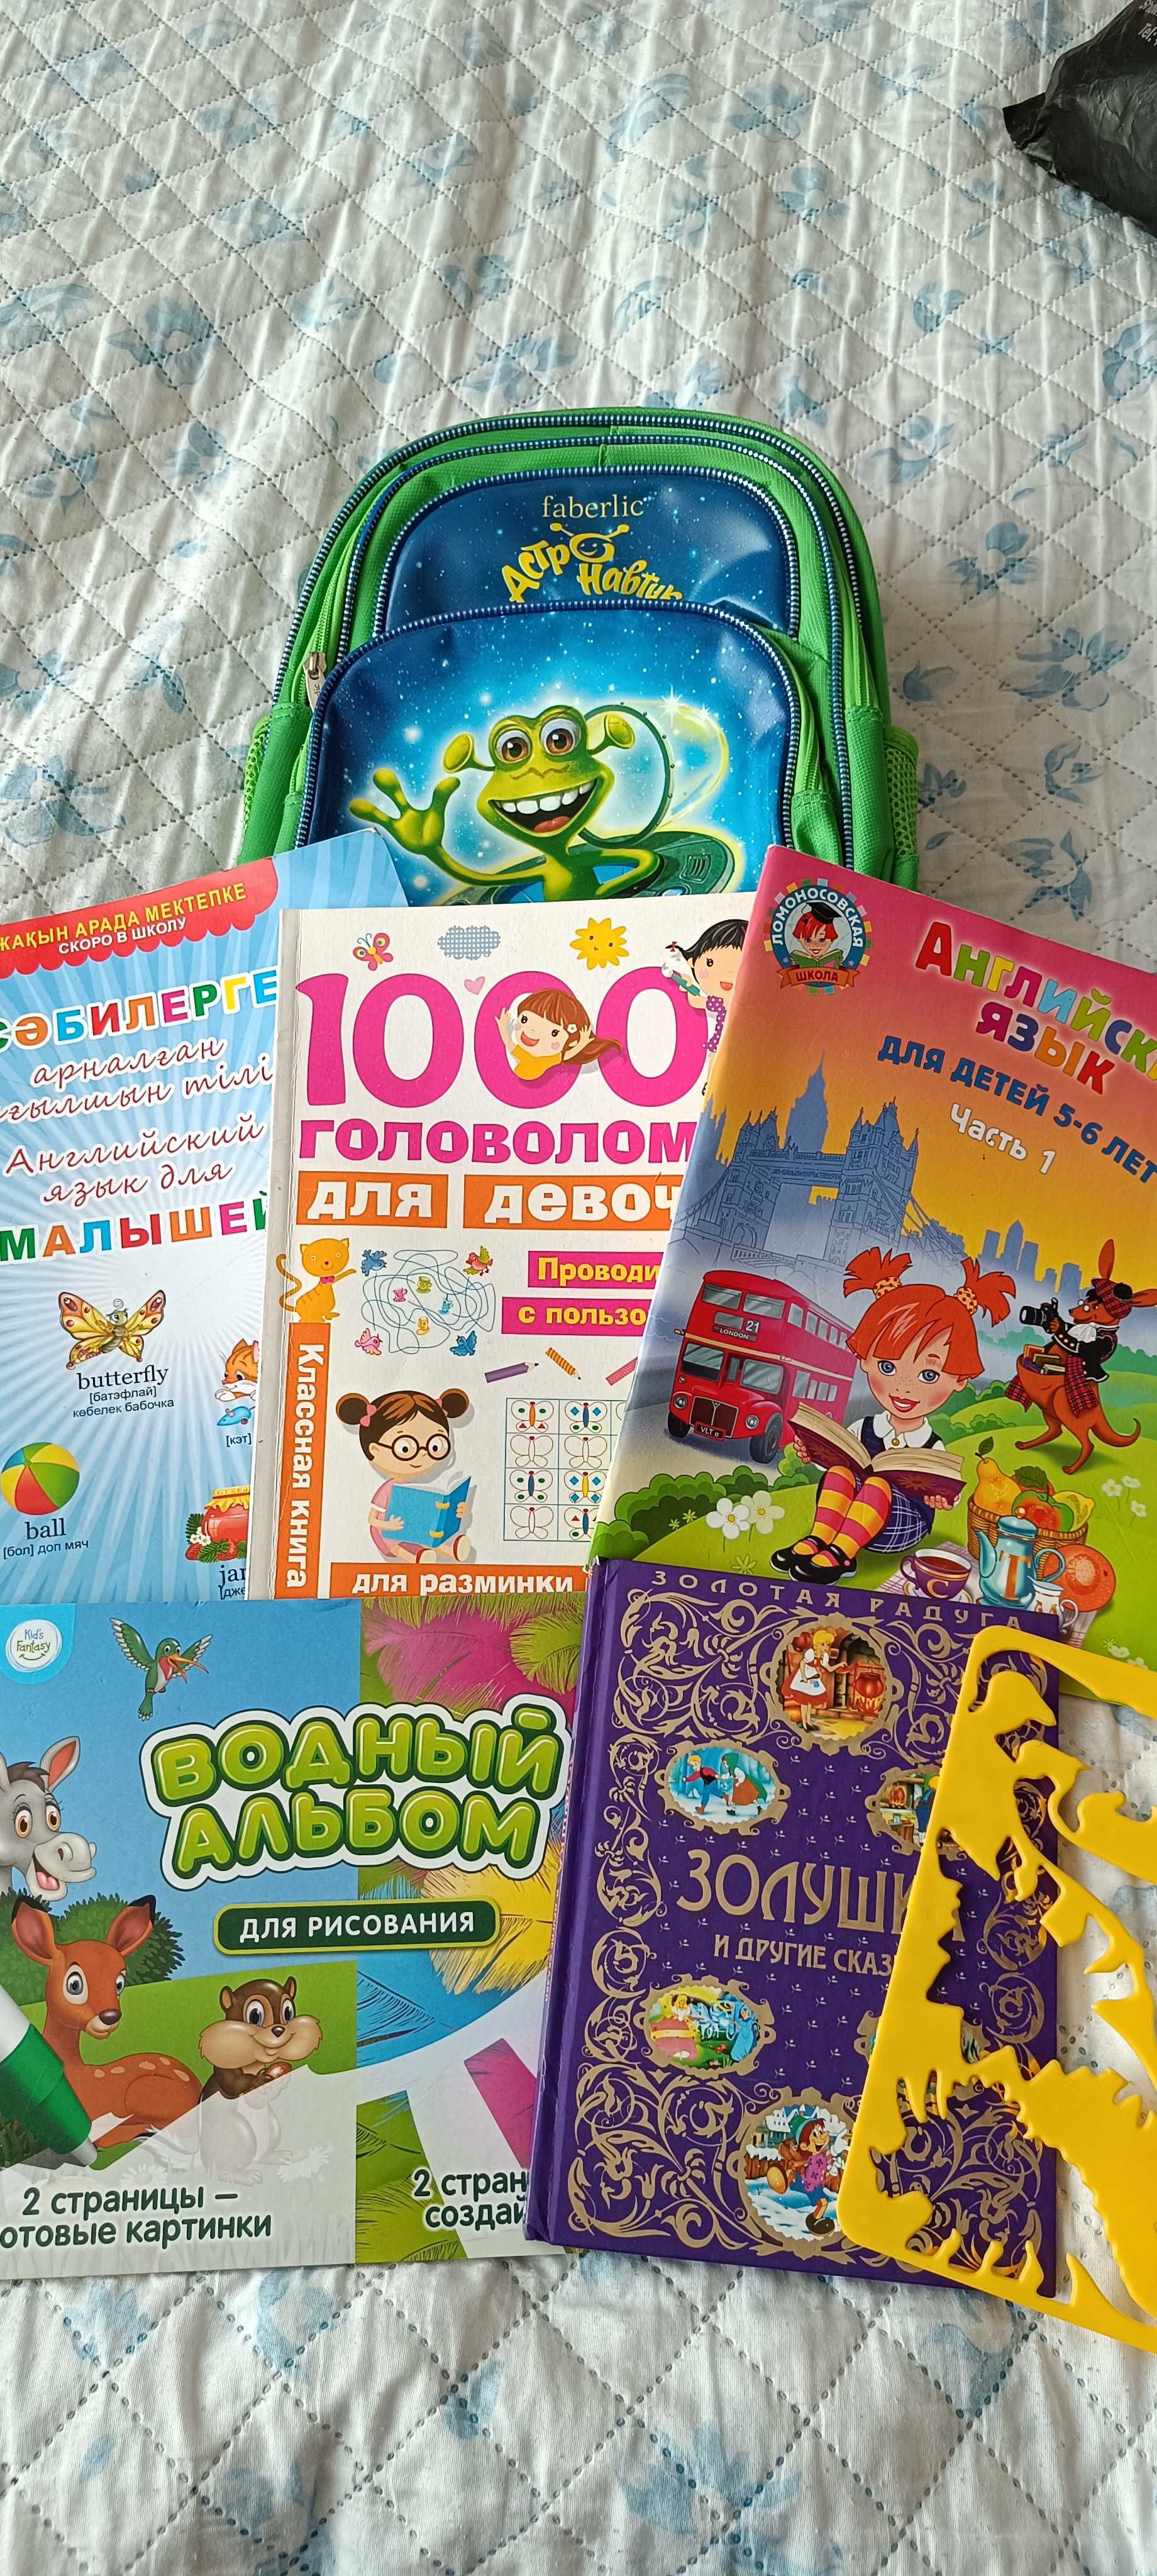 Рюкзак детский (детский сад/развивашка) + книги в подарок